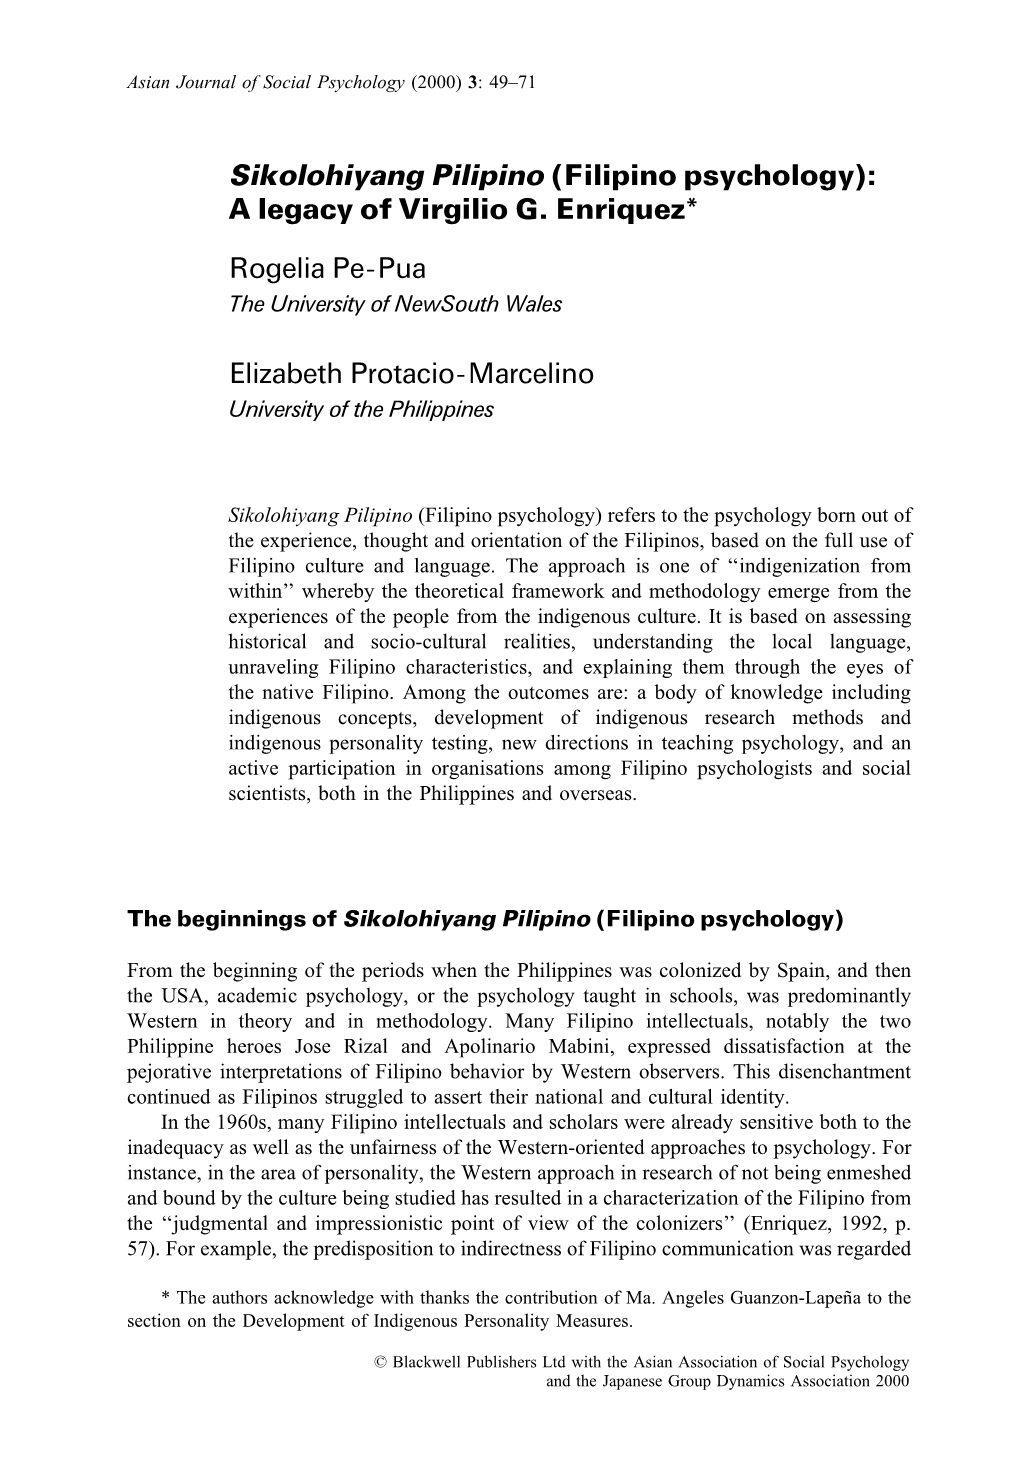 Sikolohiyang Pilipino (Filipino Psychology): a Legacy of Virgilio G